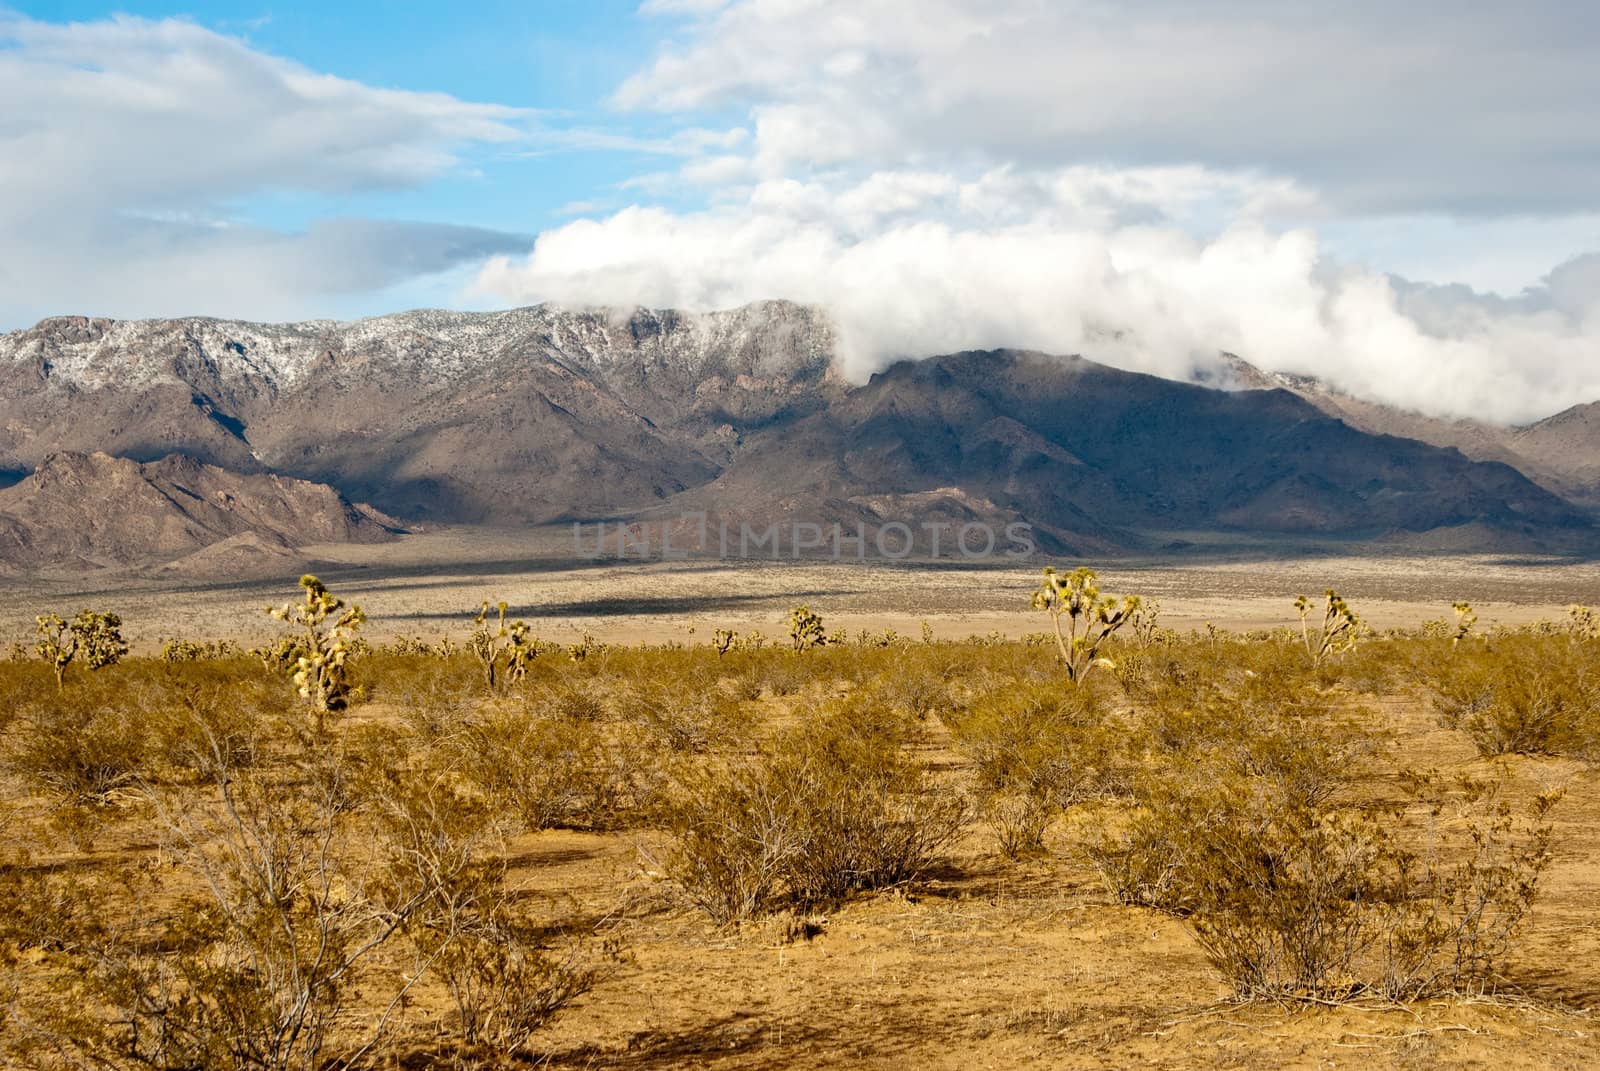 Winter storm over desert landscape